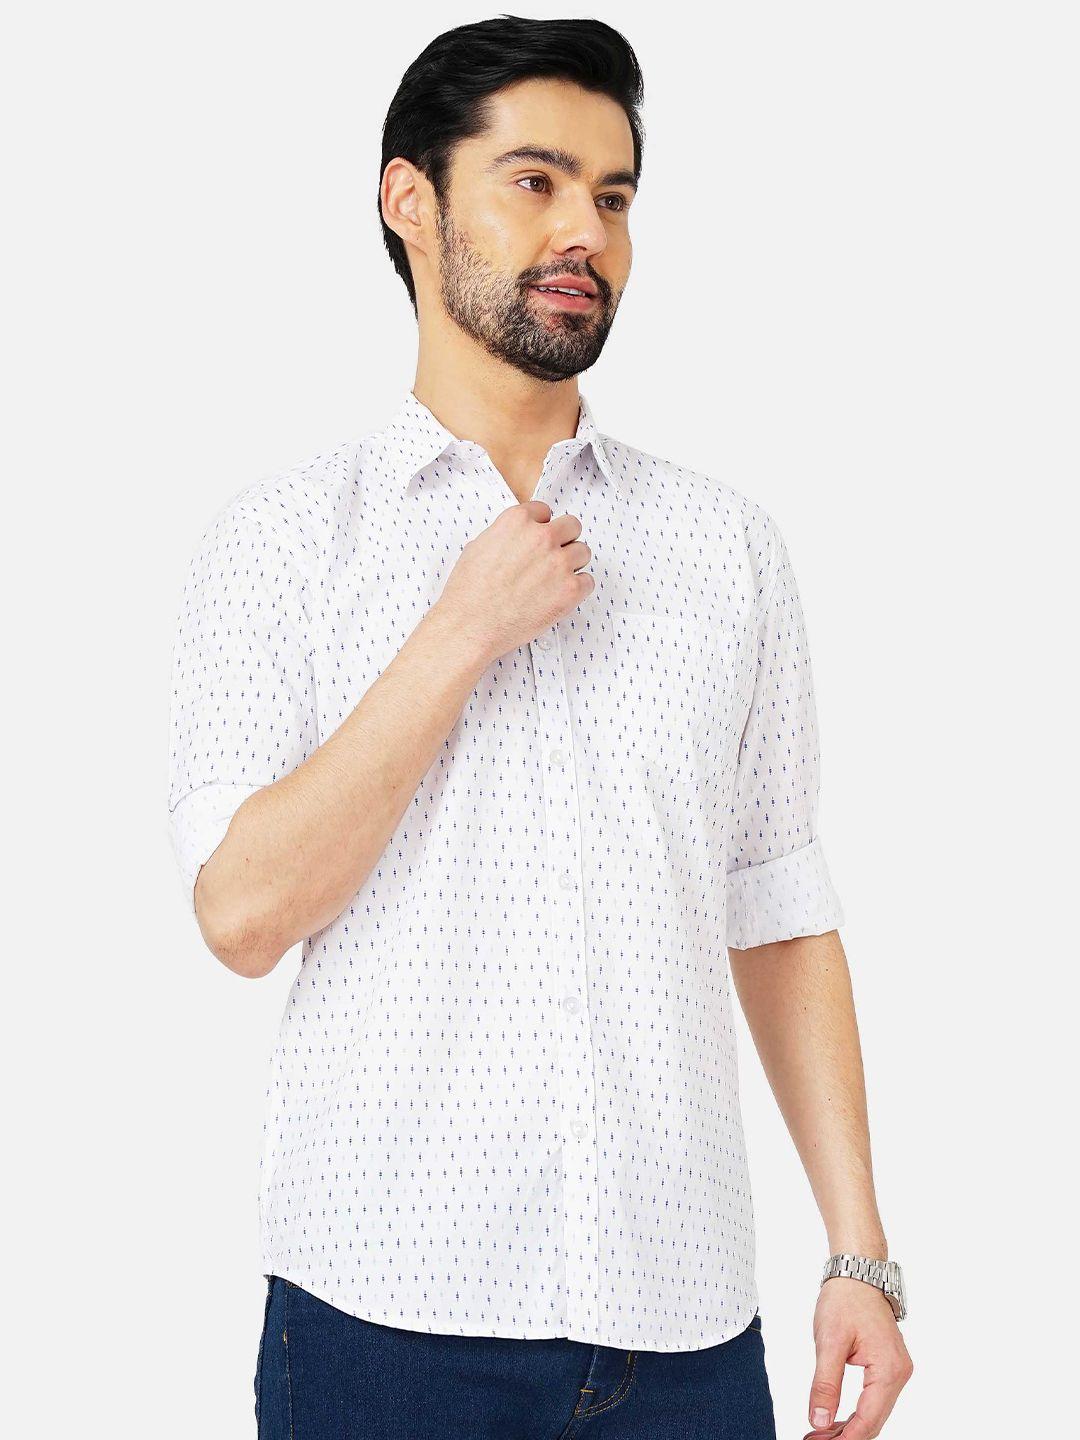 soratia men slim fit printed cotton casual shirt